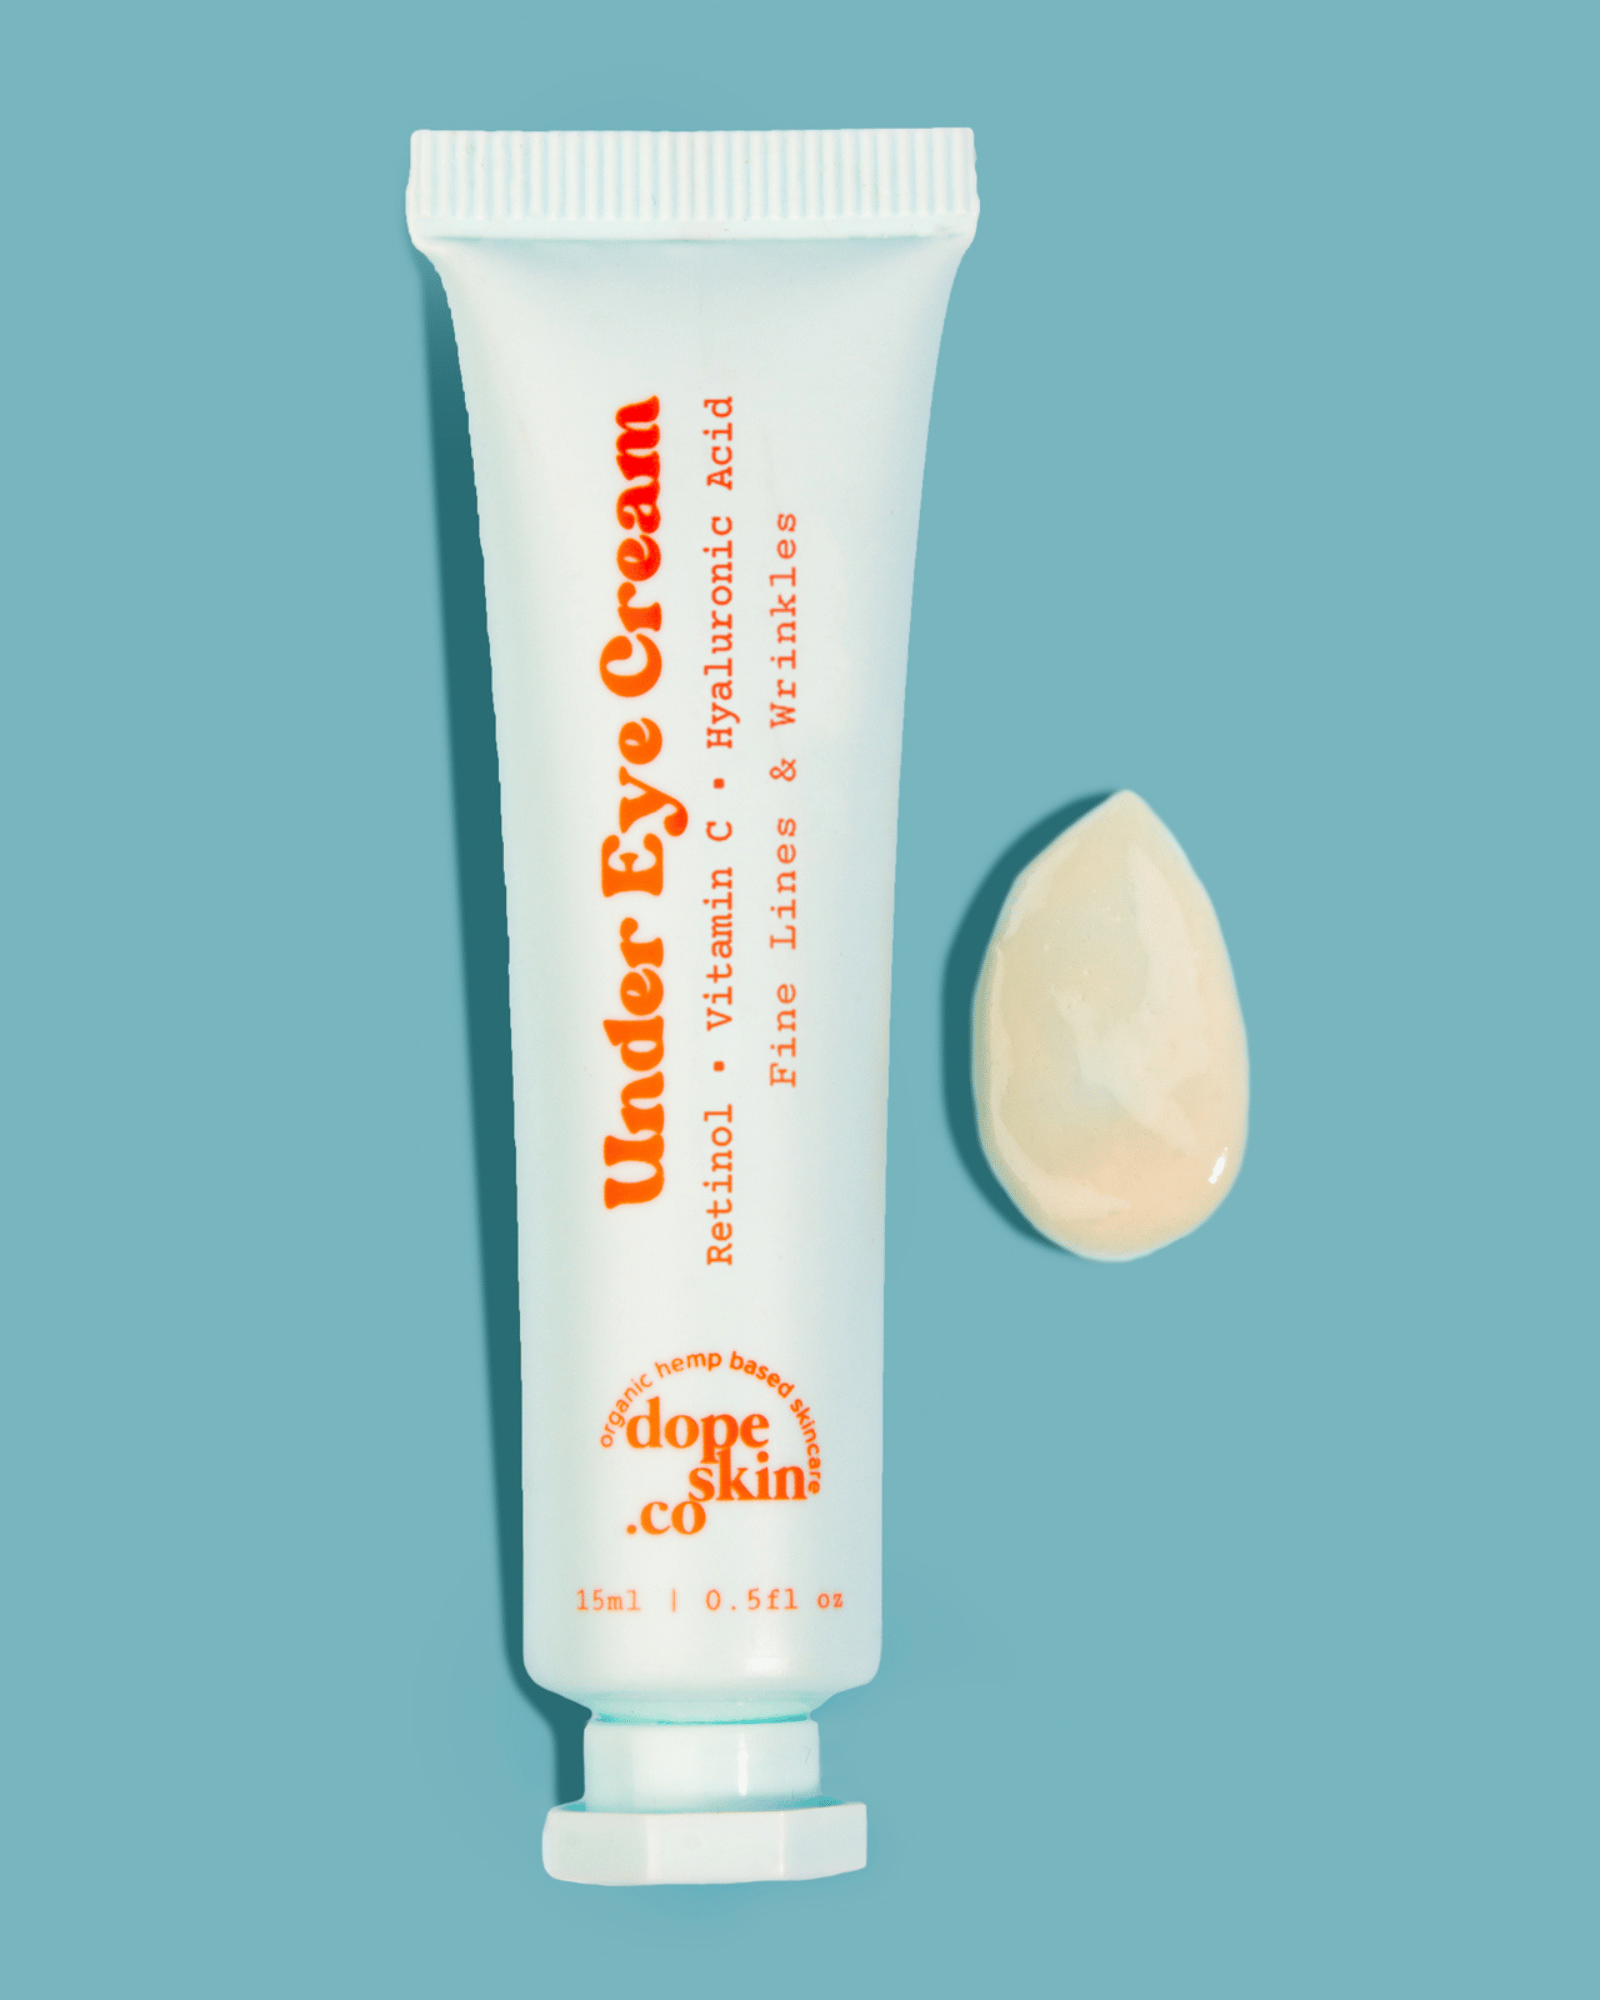 Retinol Eye Cream with Vitamin C